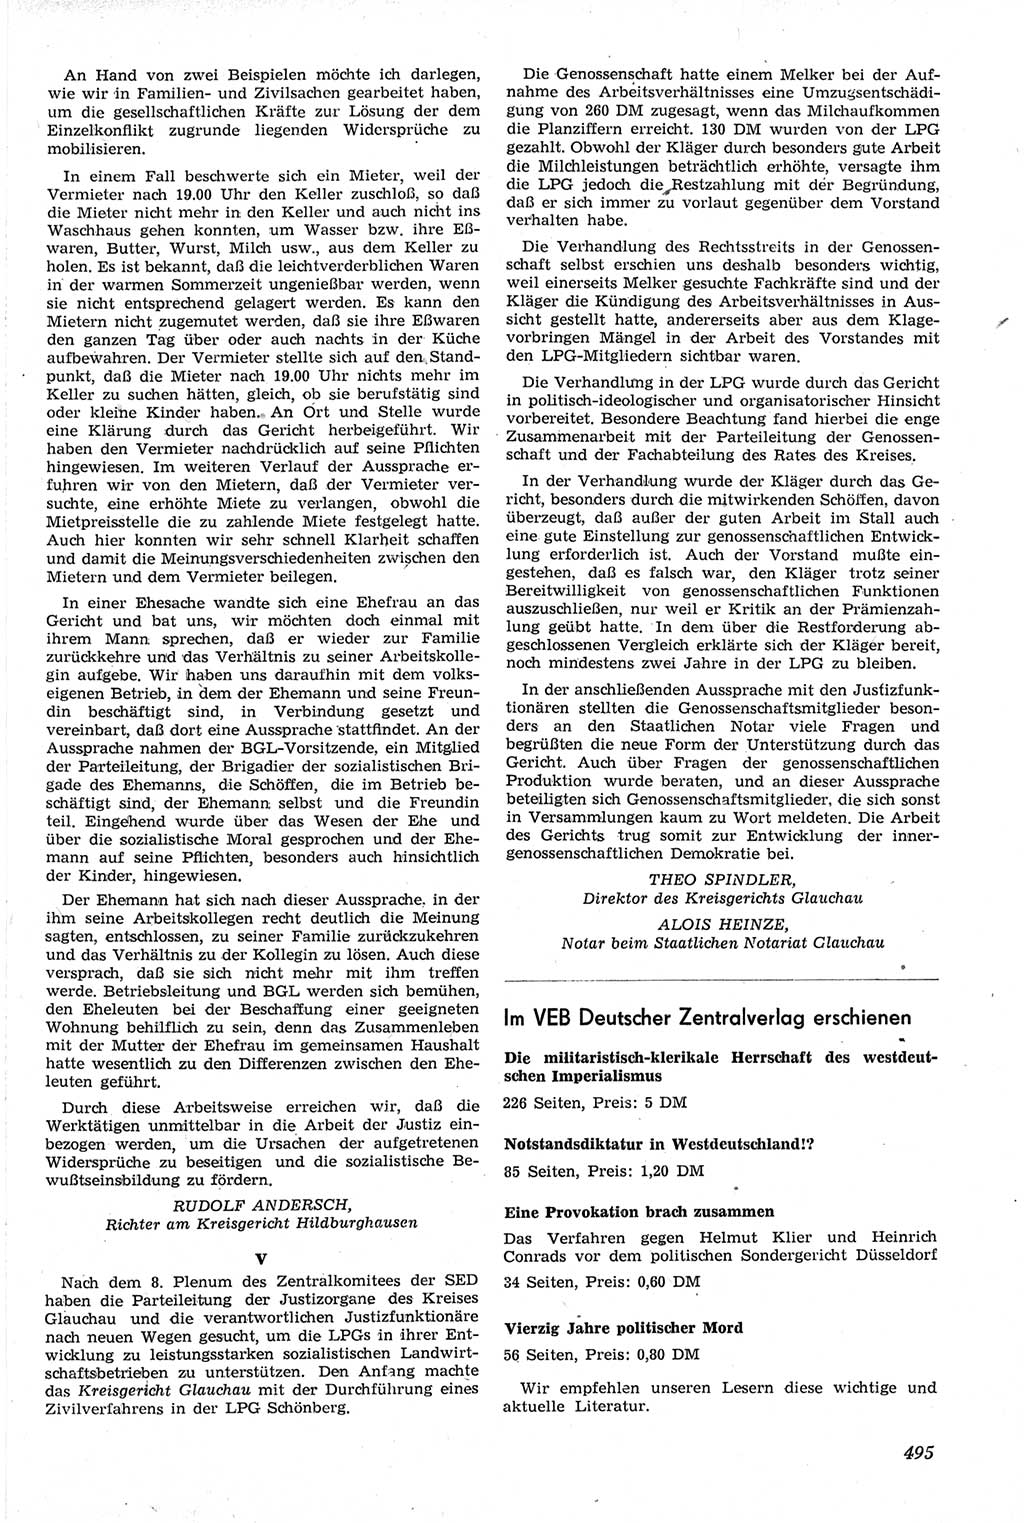 Neue Justiz (NJ), Zeitschrift für Recht und Rechtswissenschaft [Deutsche Demokratische Republik (DDR)], 14. Jahrgang 1960, Seite 495 (NJ DDR 1960, S. 495)